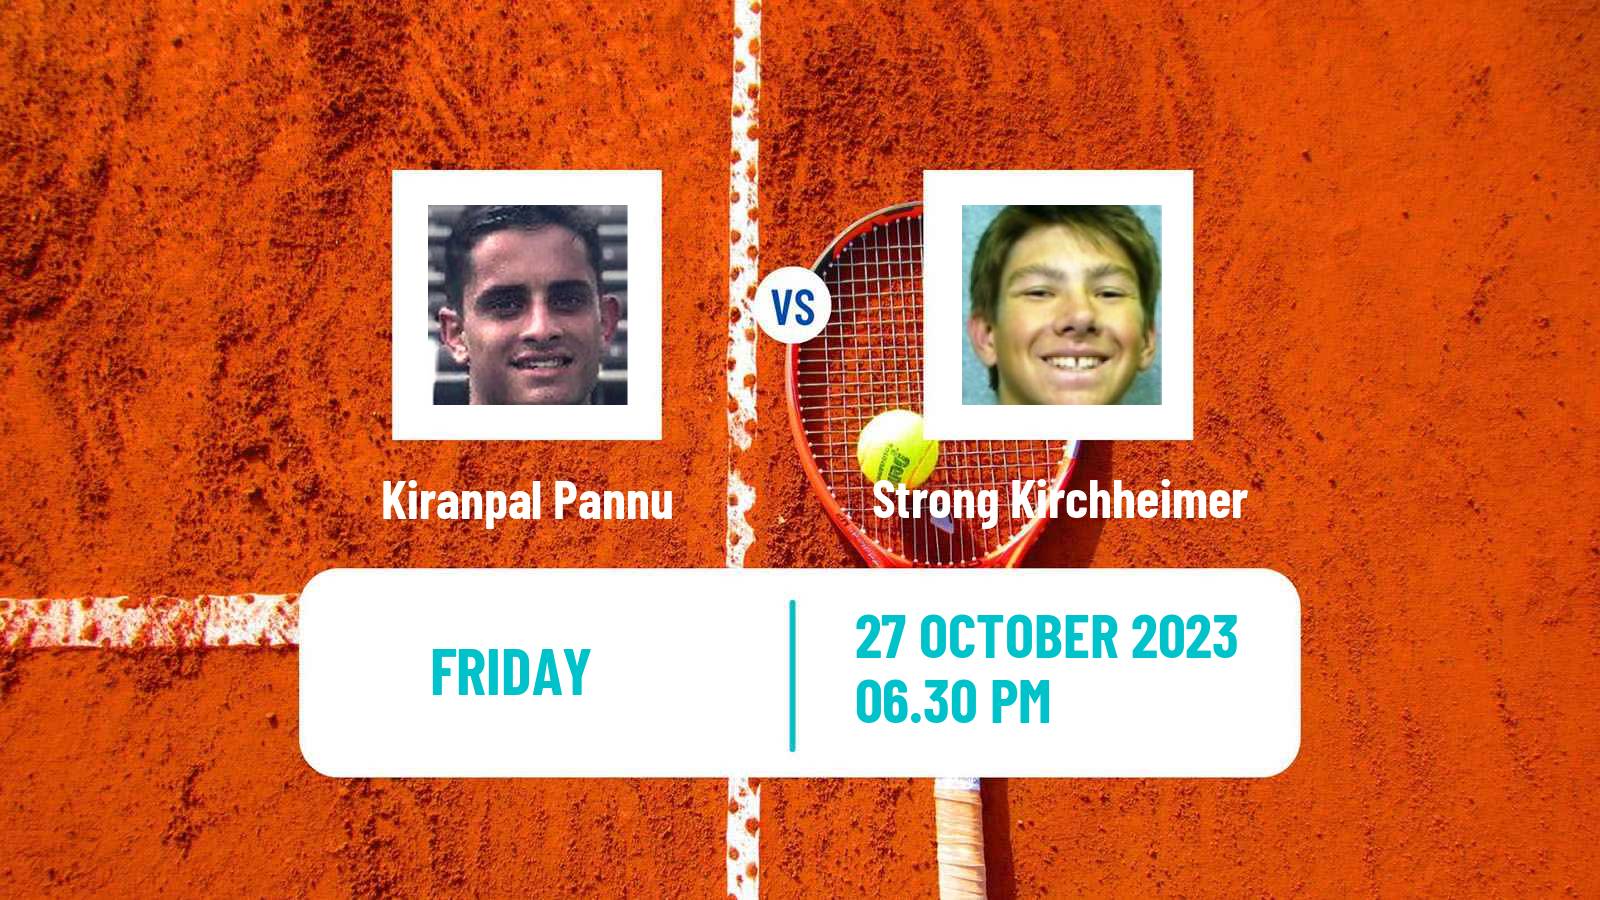 Tennis ITF M25 Saint Augustin Men Kiranpal Pannu - Strong Kirchheimer